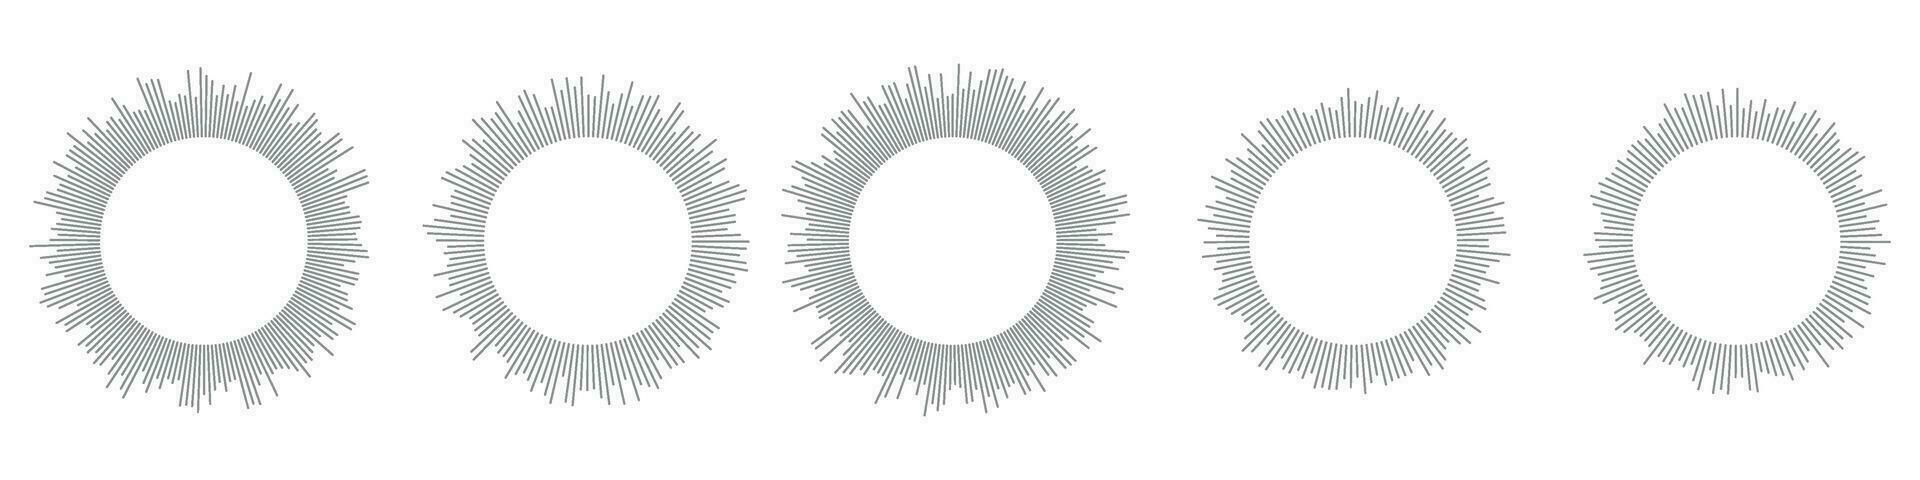 runden Musik- Welle Grafik. Spiral- Linie Muster abbilden Klang und Radio kreisförmig Symbole. rhythmisch Mischung von Wellen. eben Abbildungen isoliert auf Weiß Hintergrund. vektor